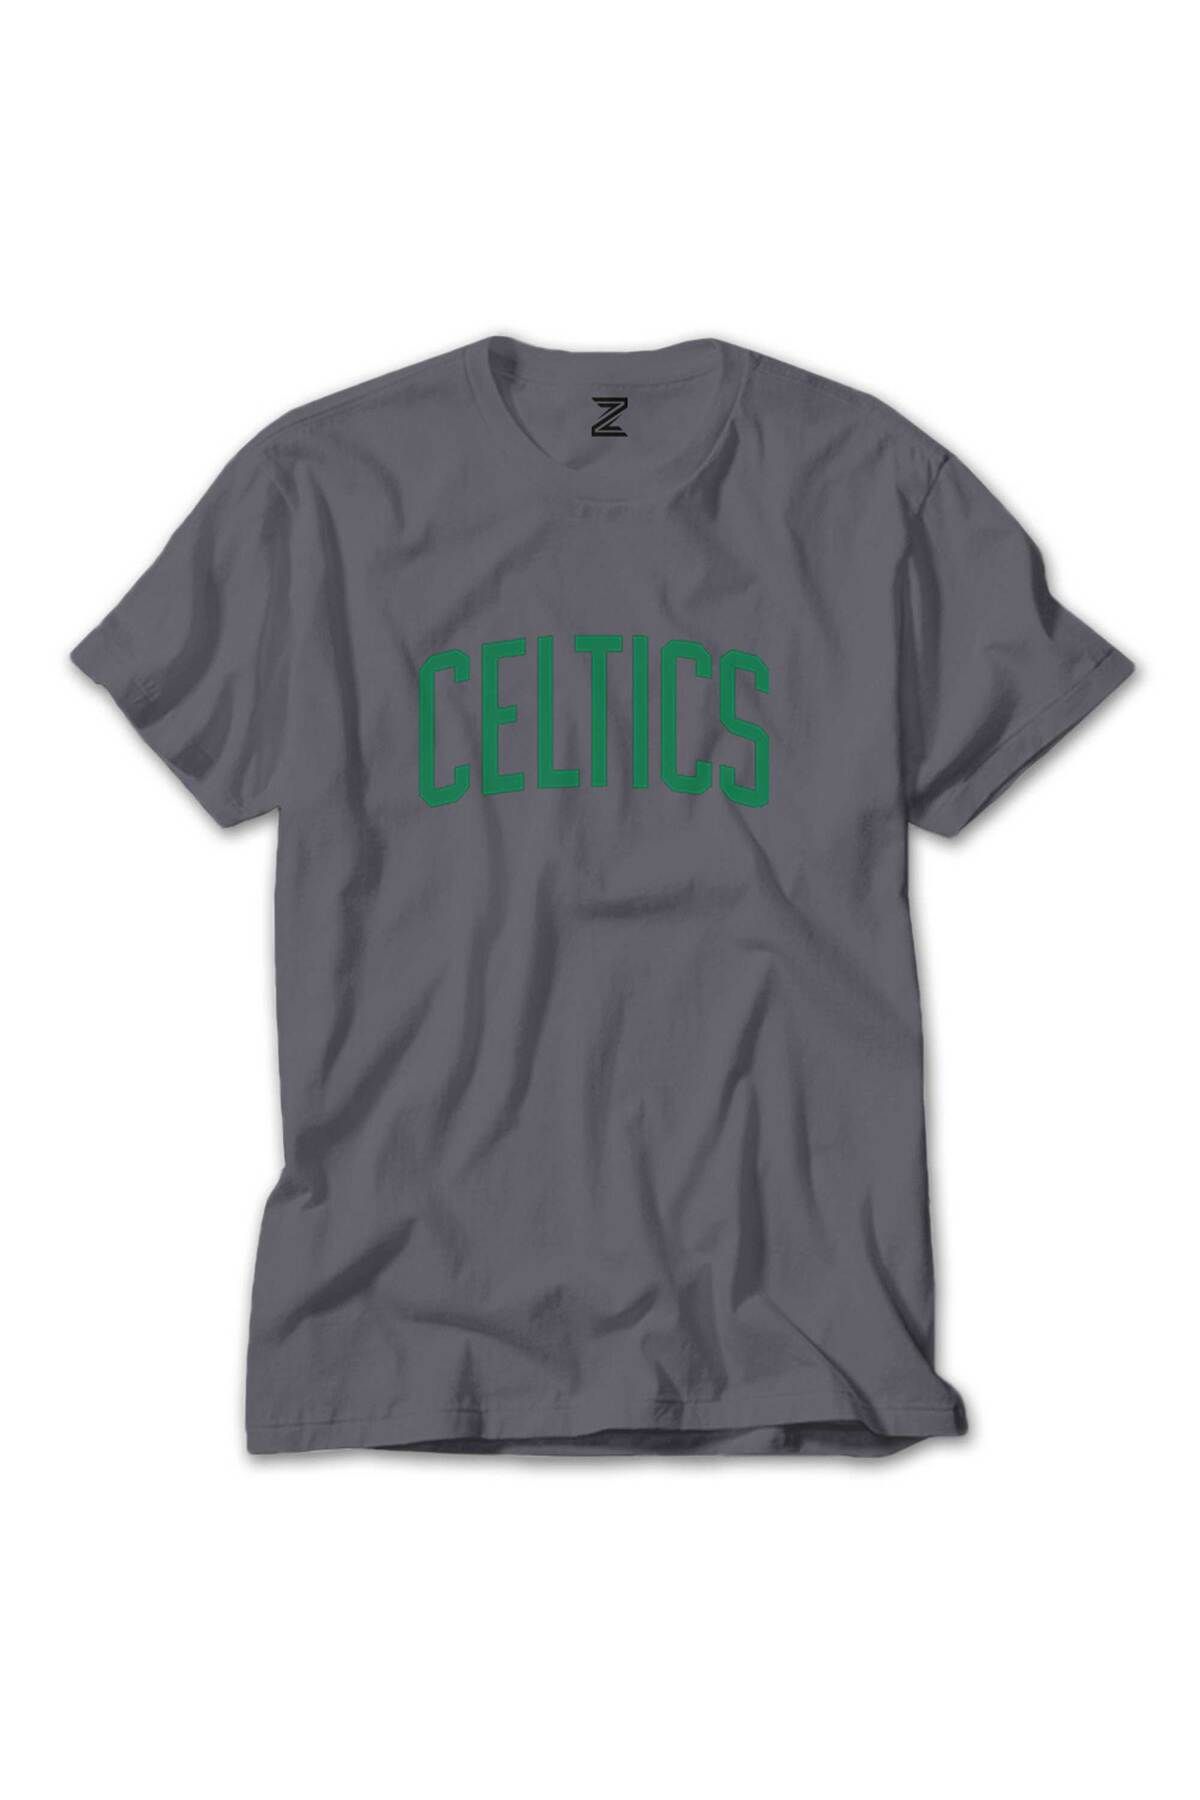 Tomris Hatun Boston Celtics Yazı Renkli Tişört Gri Renkli L Beden